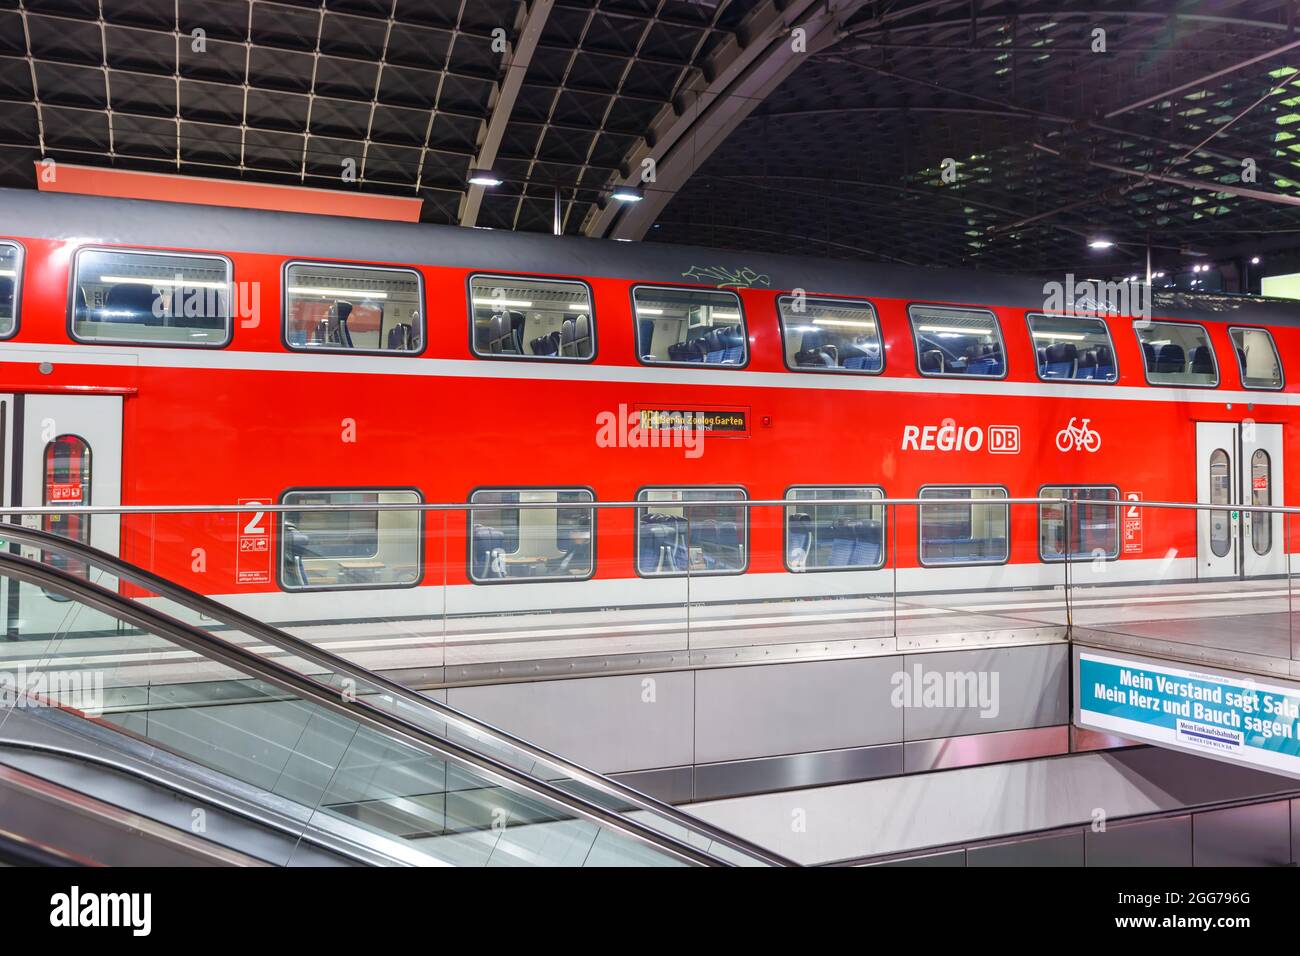 Berlin, Allemagne - 22 avril 2021: Train régional Deutsche Bahn DB Regio à la gare principale de Berlin Hauptbahnhof Hbf en Allemagne. Banque D'Images